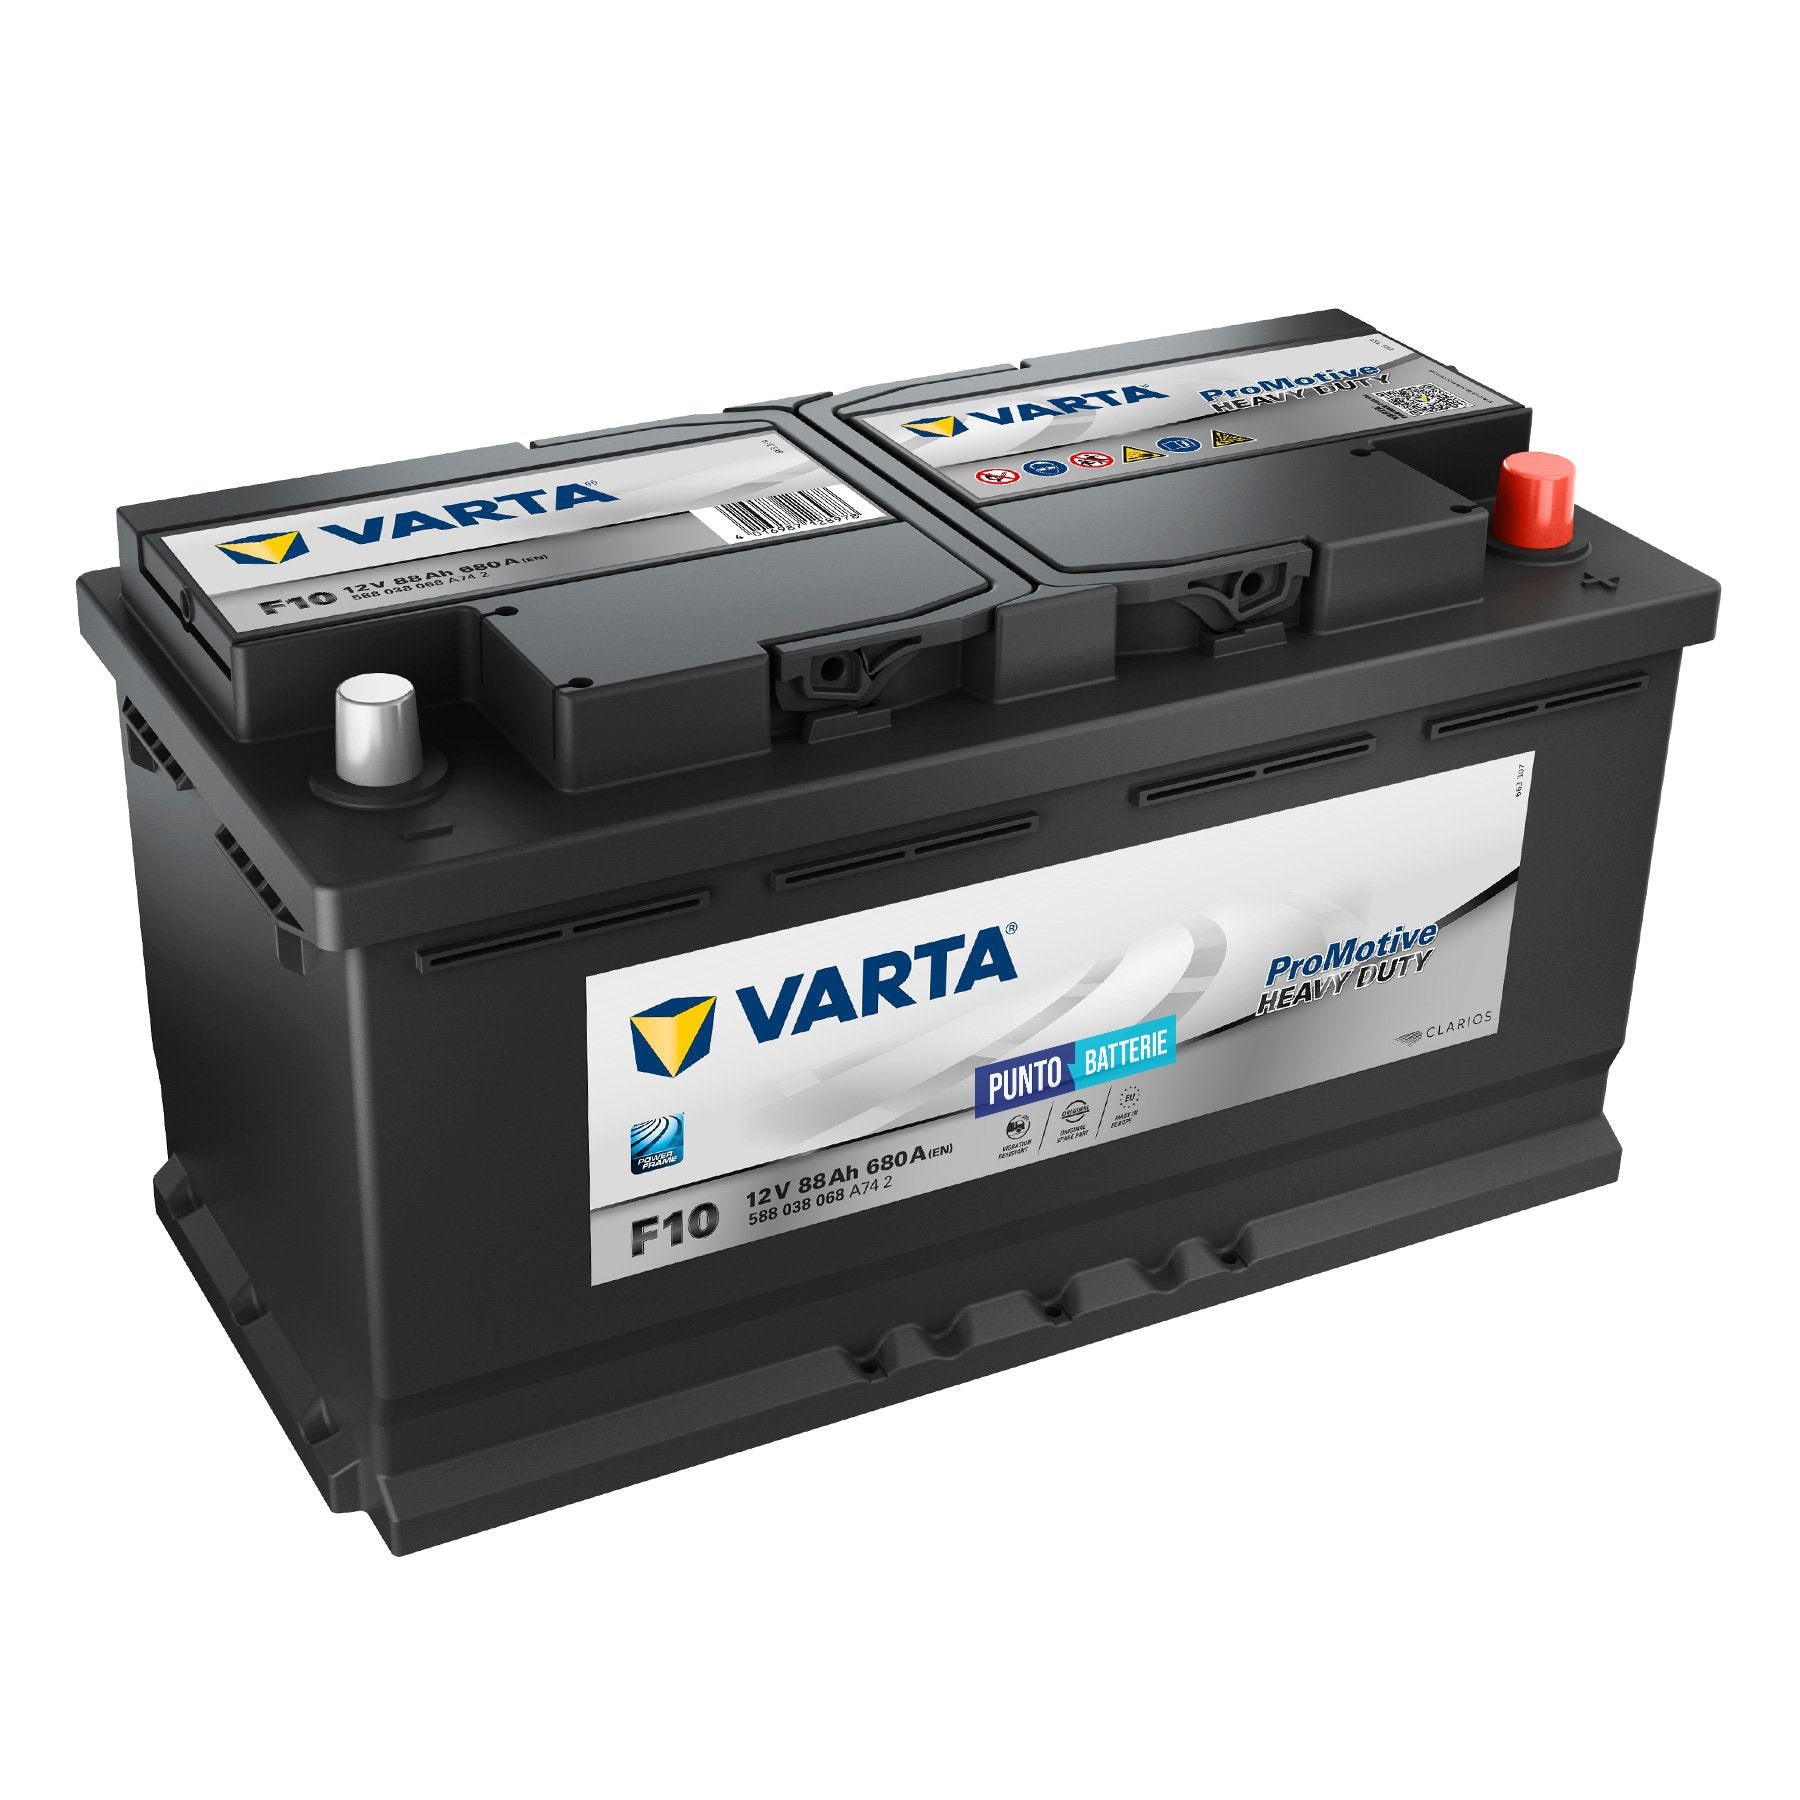 Batteria Varta F10 Promotive Heavy Duty